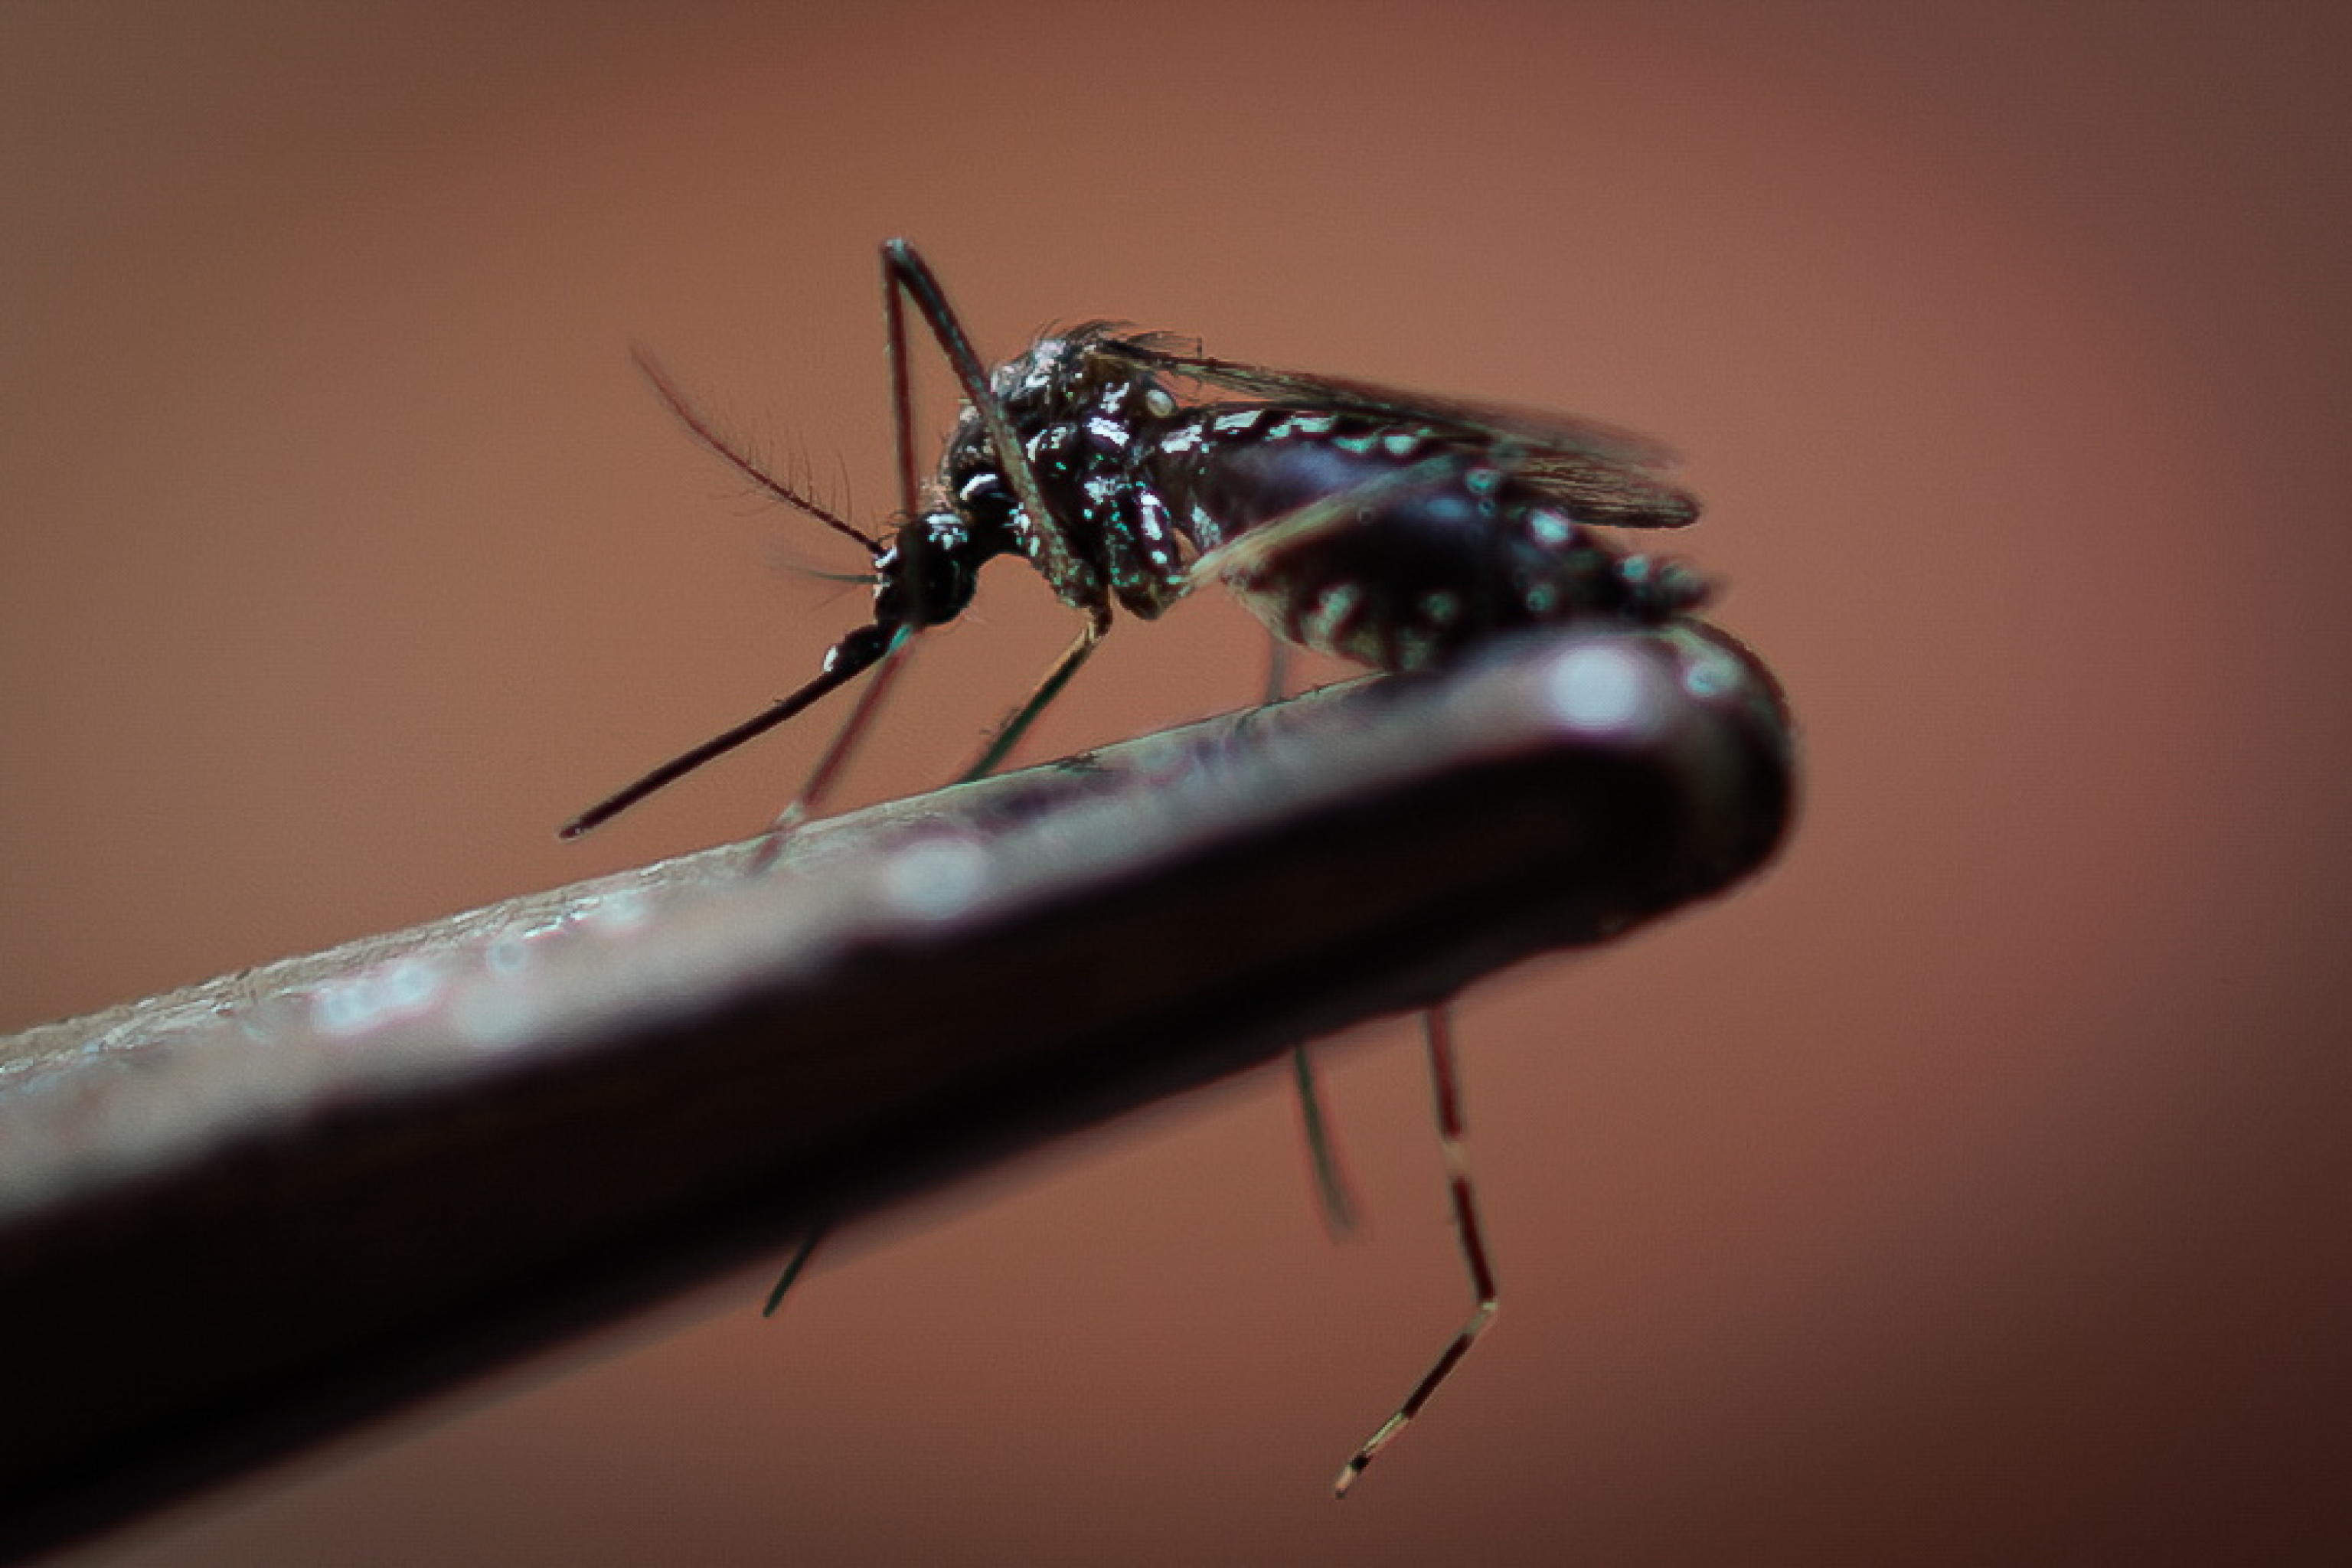 primo caso di dengue rilevato in valle d'aosta